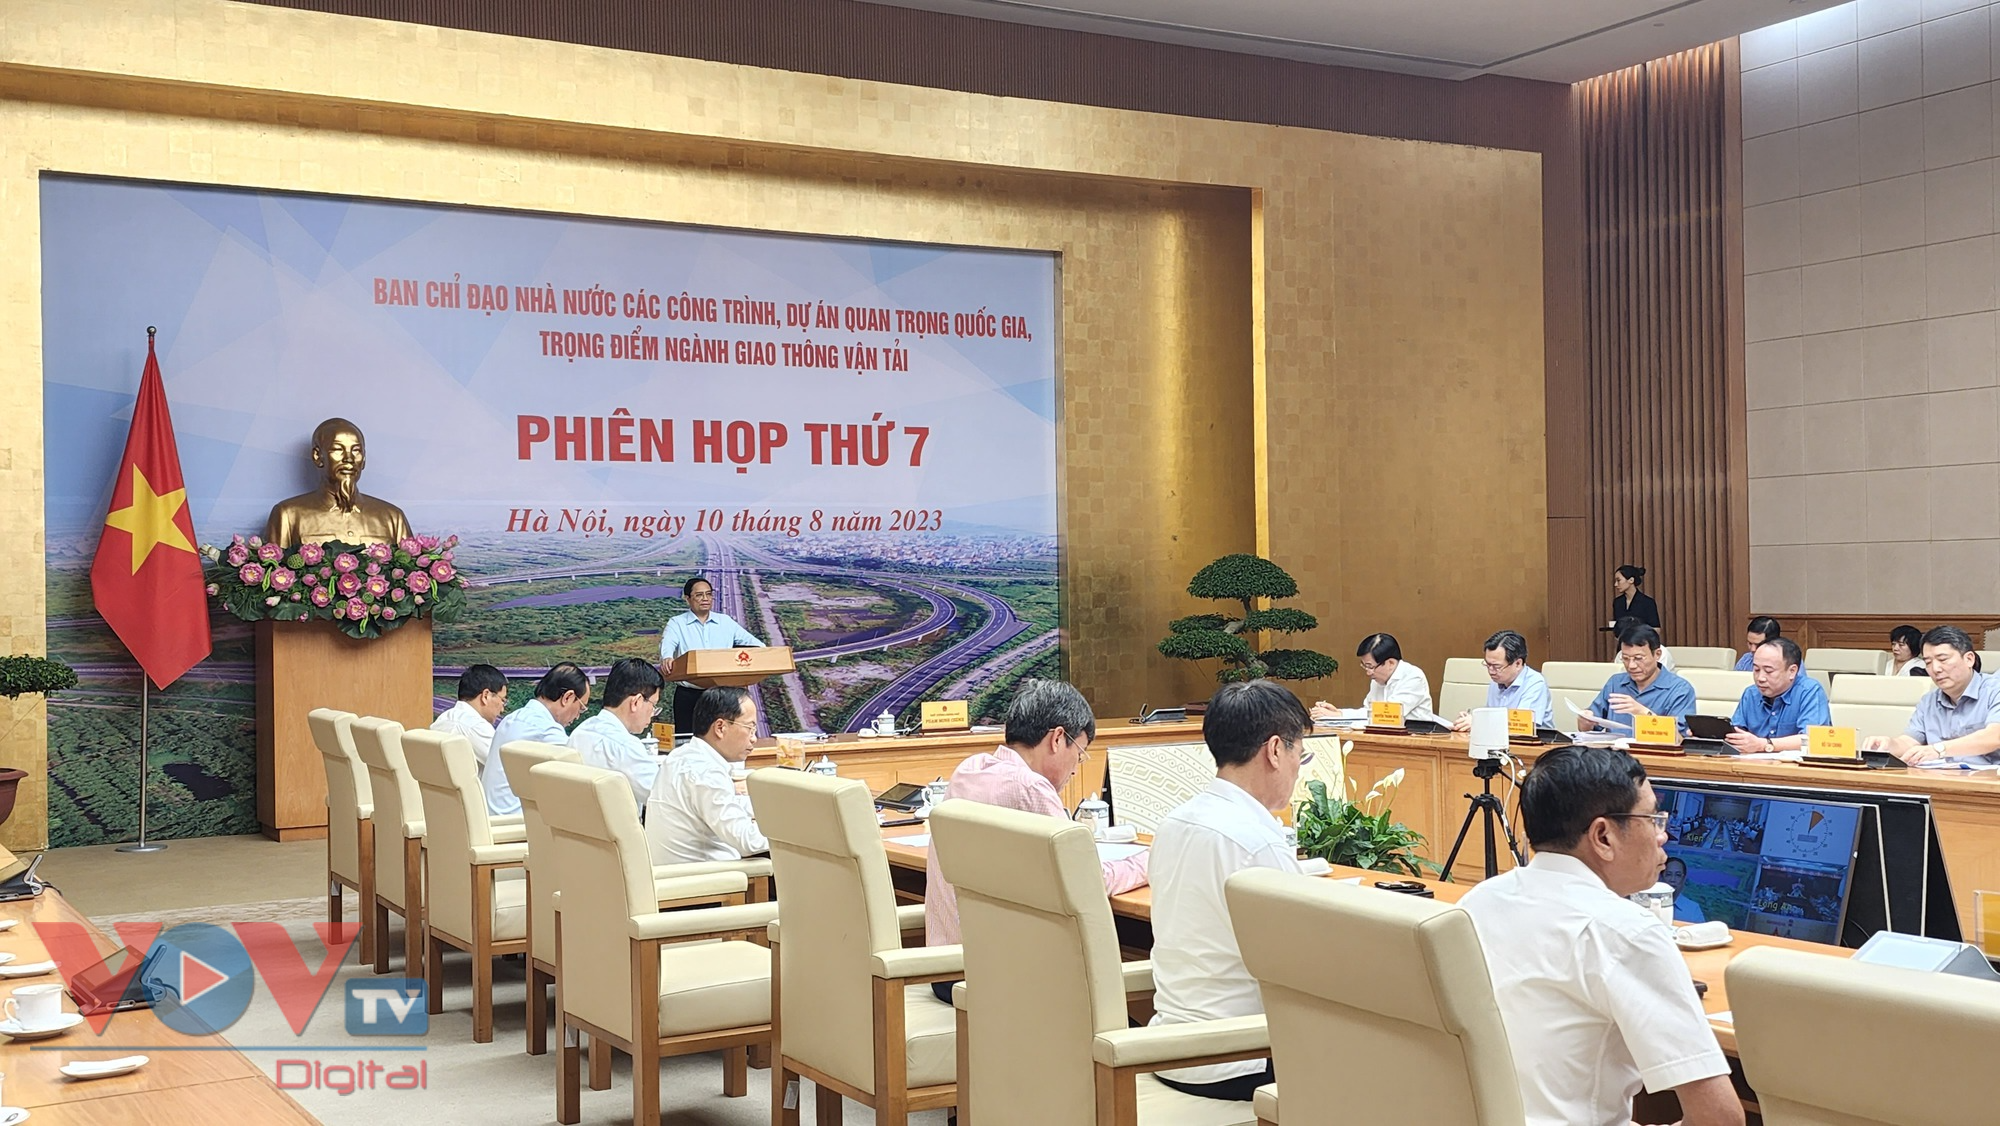 Thủ tướng Phạm Minh Chính chủ trì phiên họp lần thứ 7 Ban Chỉ đạo Nhà nước các công trình, dự án quan trọng quốc gia, trọng điểm ngành GTVT - Ảnh 3.